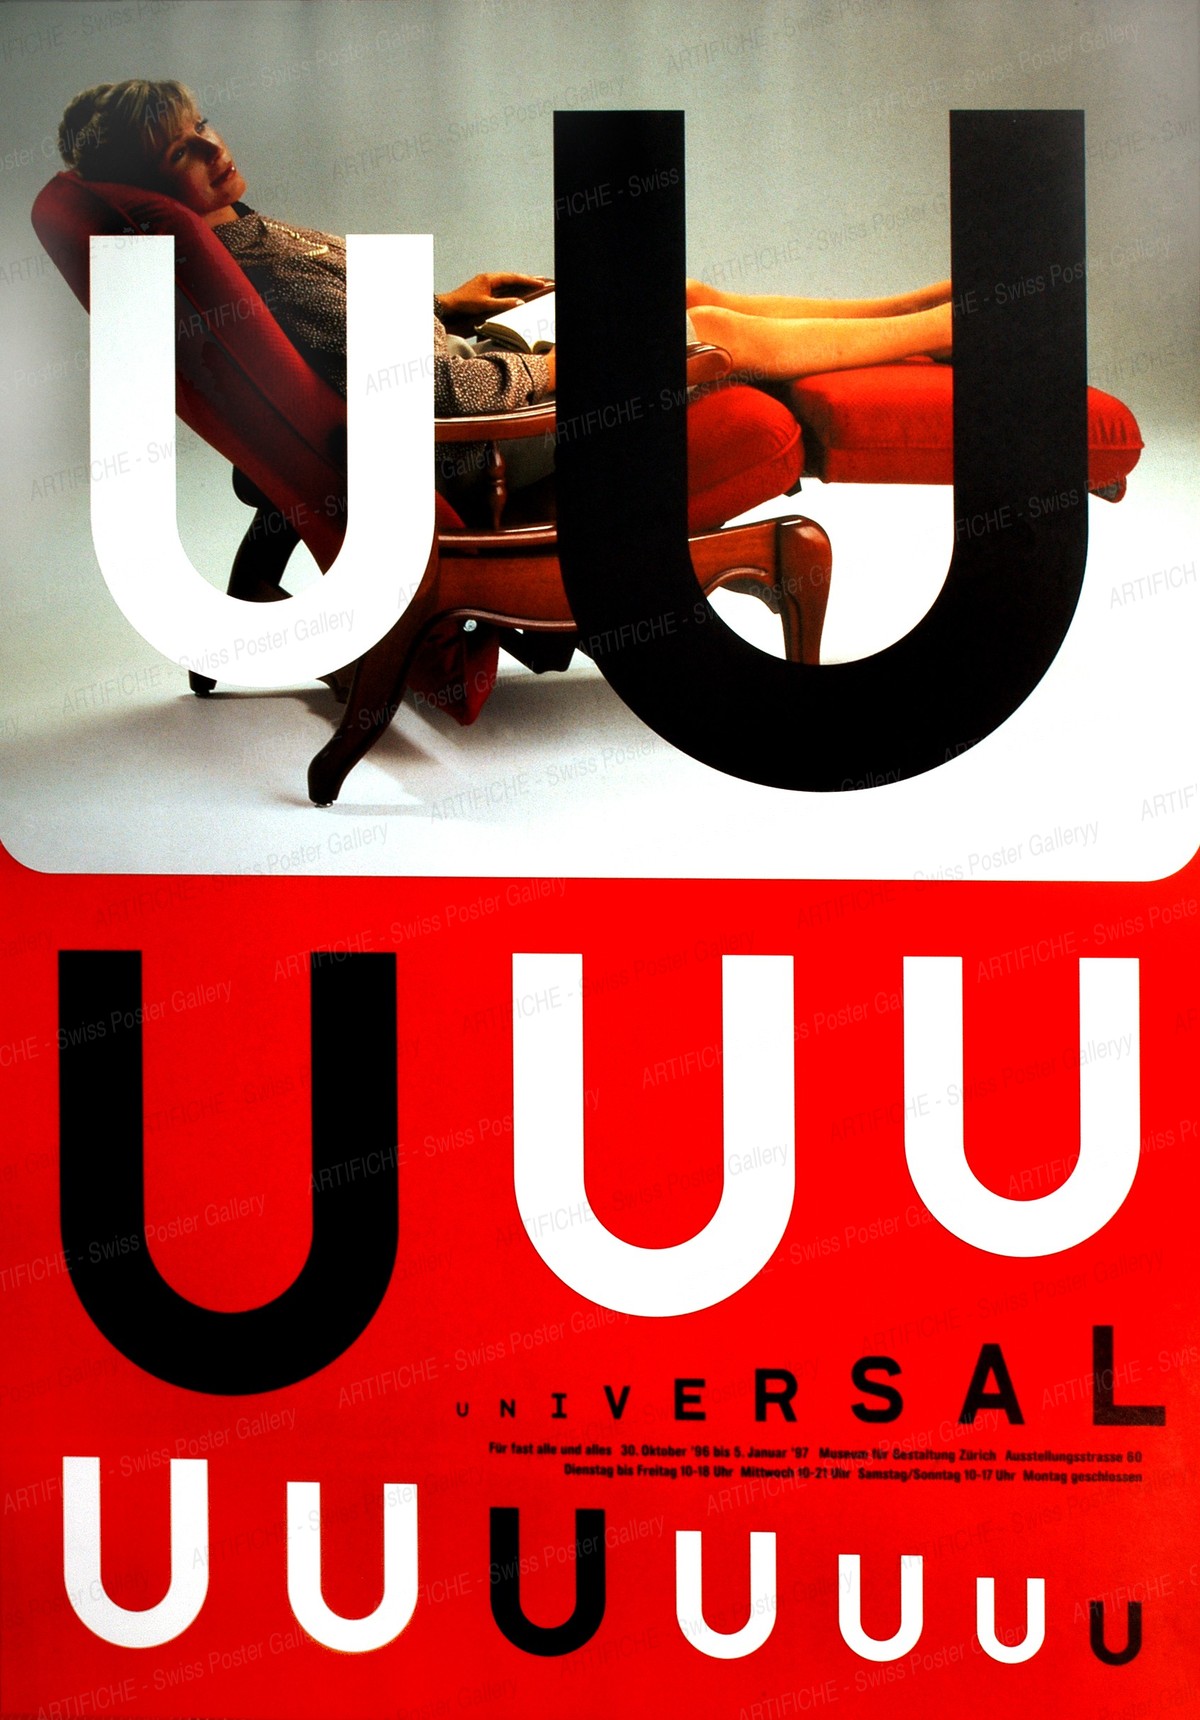 Museum für Gestaltung Zürich – Universal, Cornel Windlin